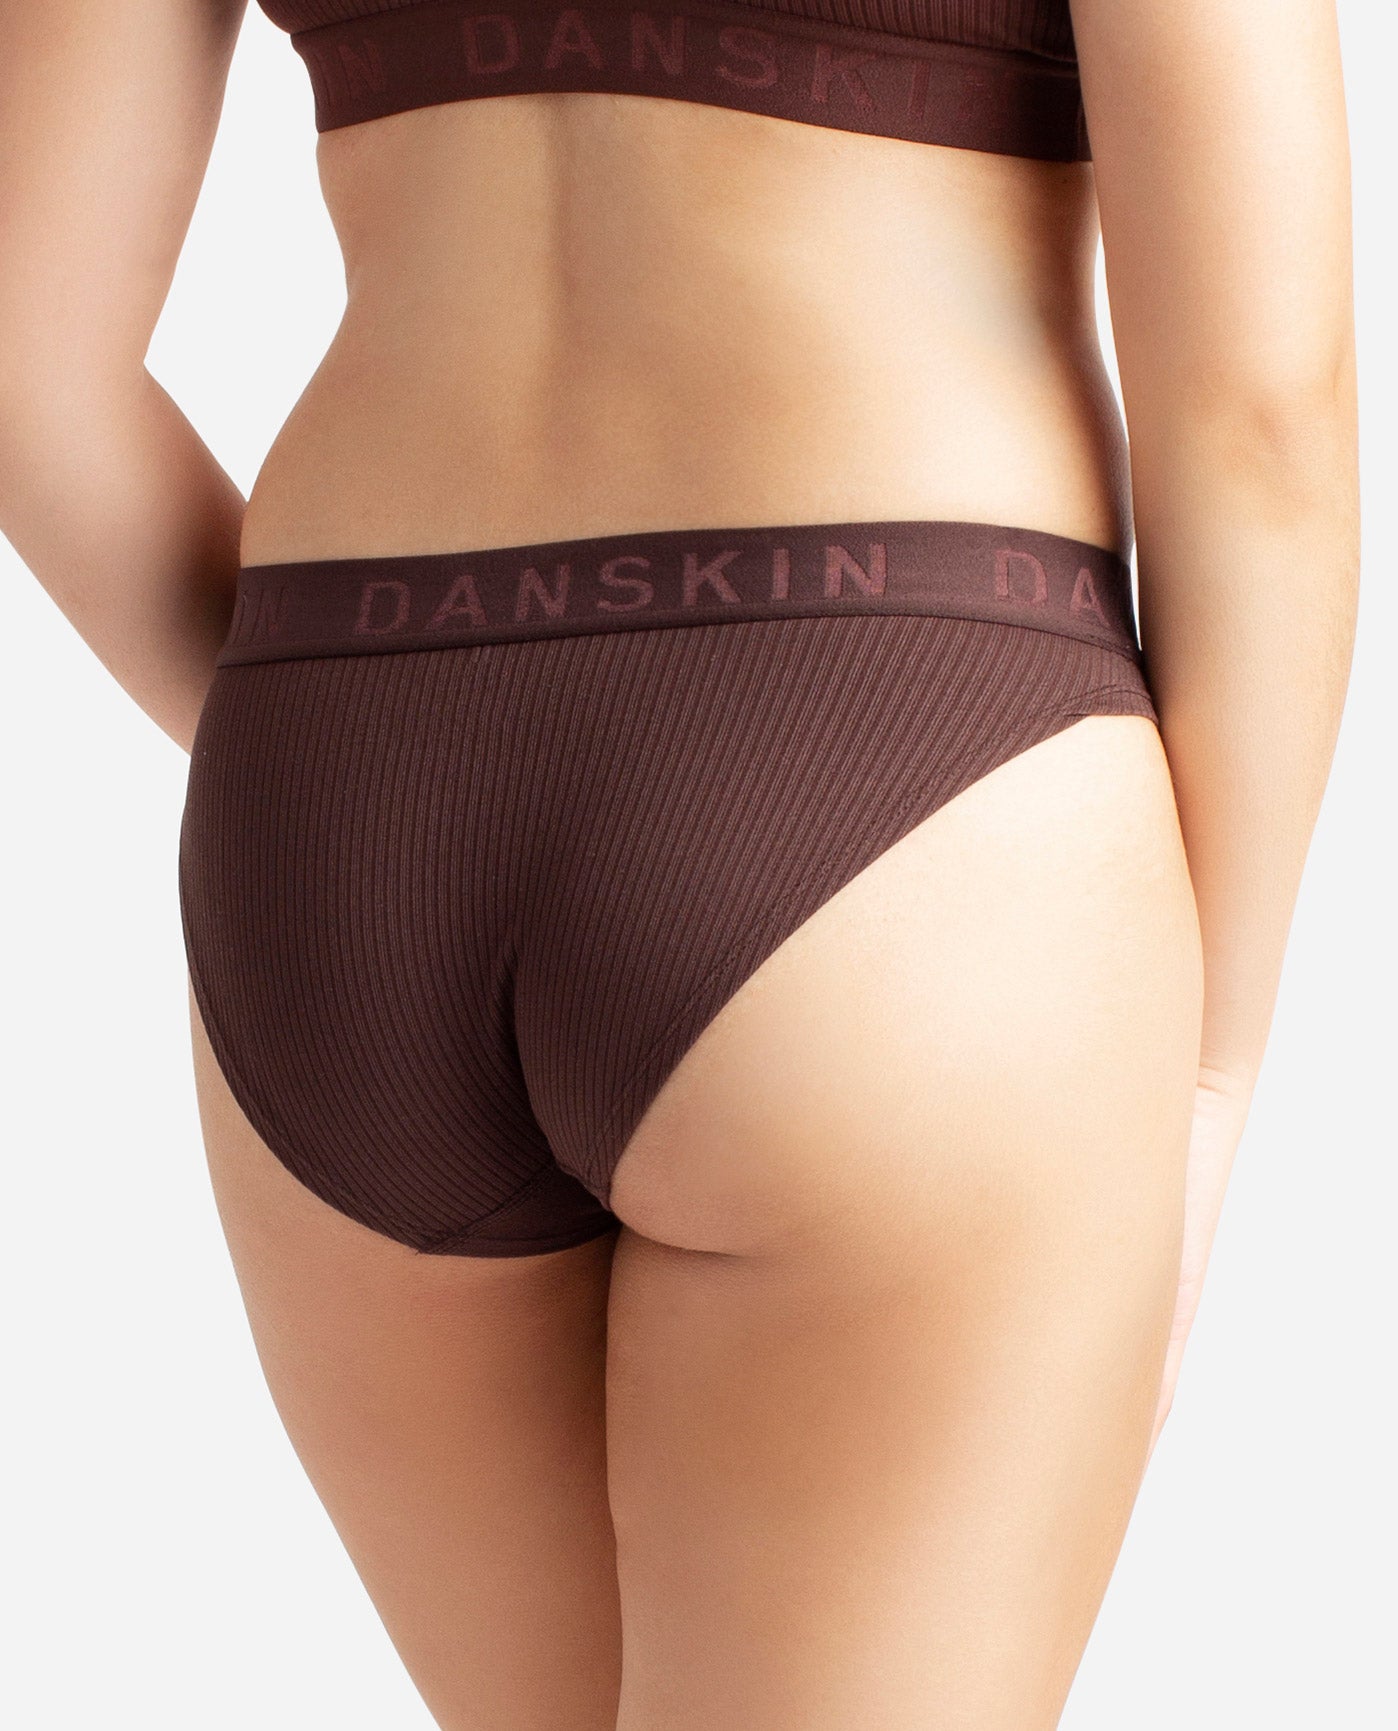 Danskin, Intimates & Sleepwear, Danskin Panty Pack